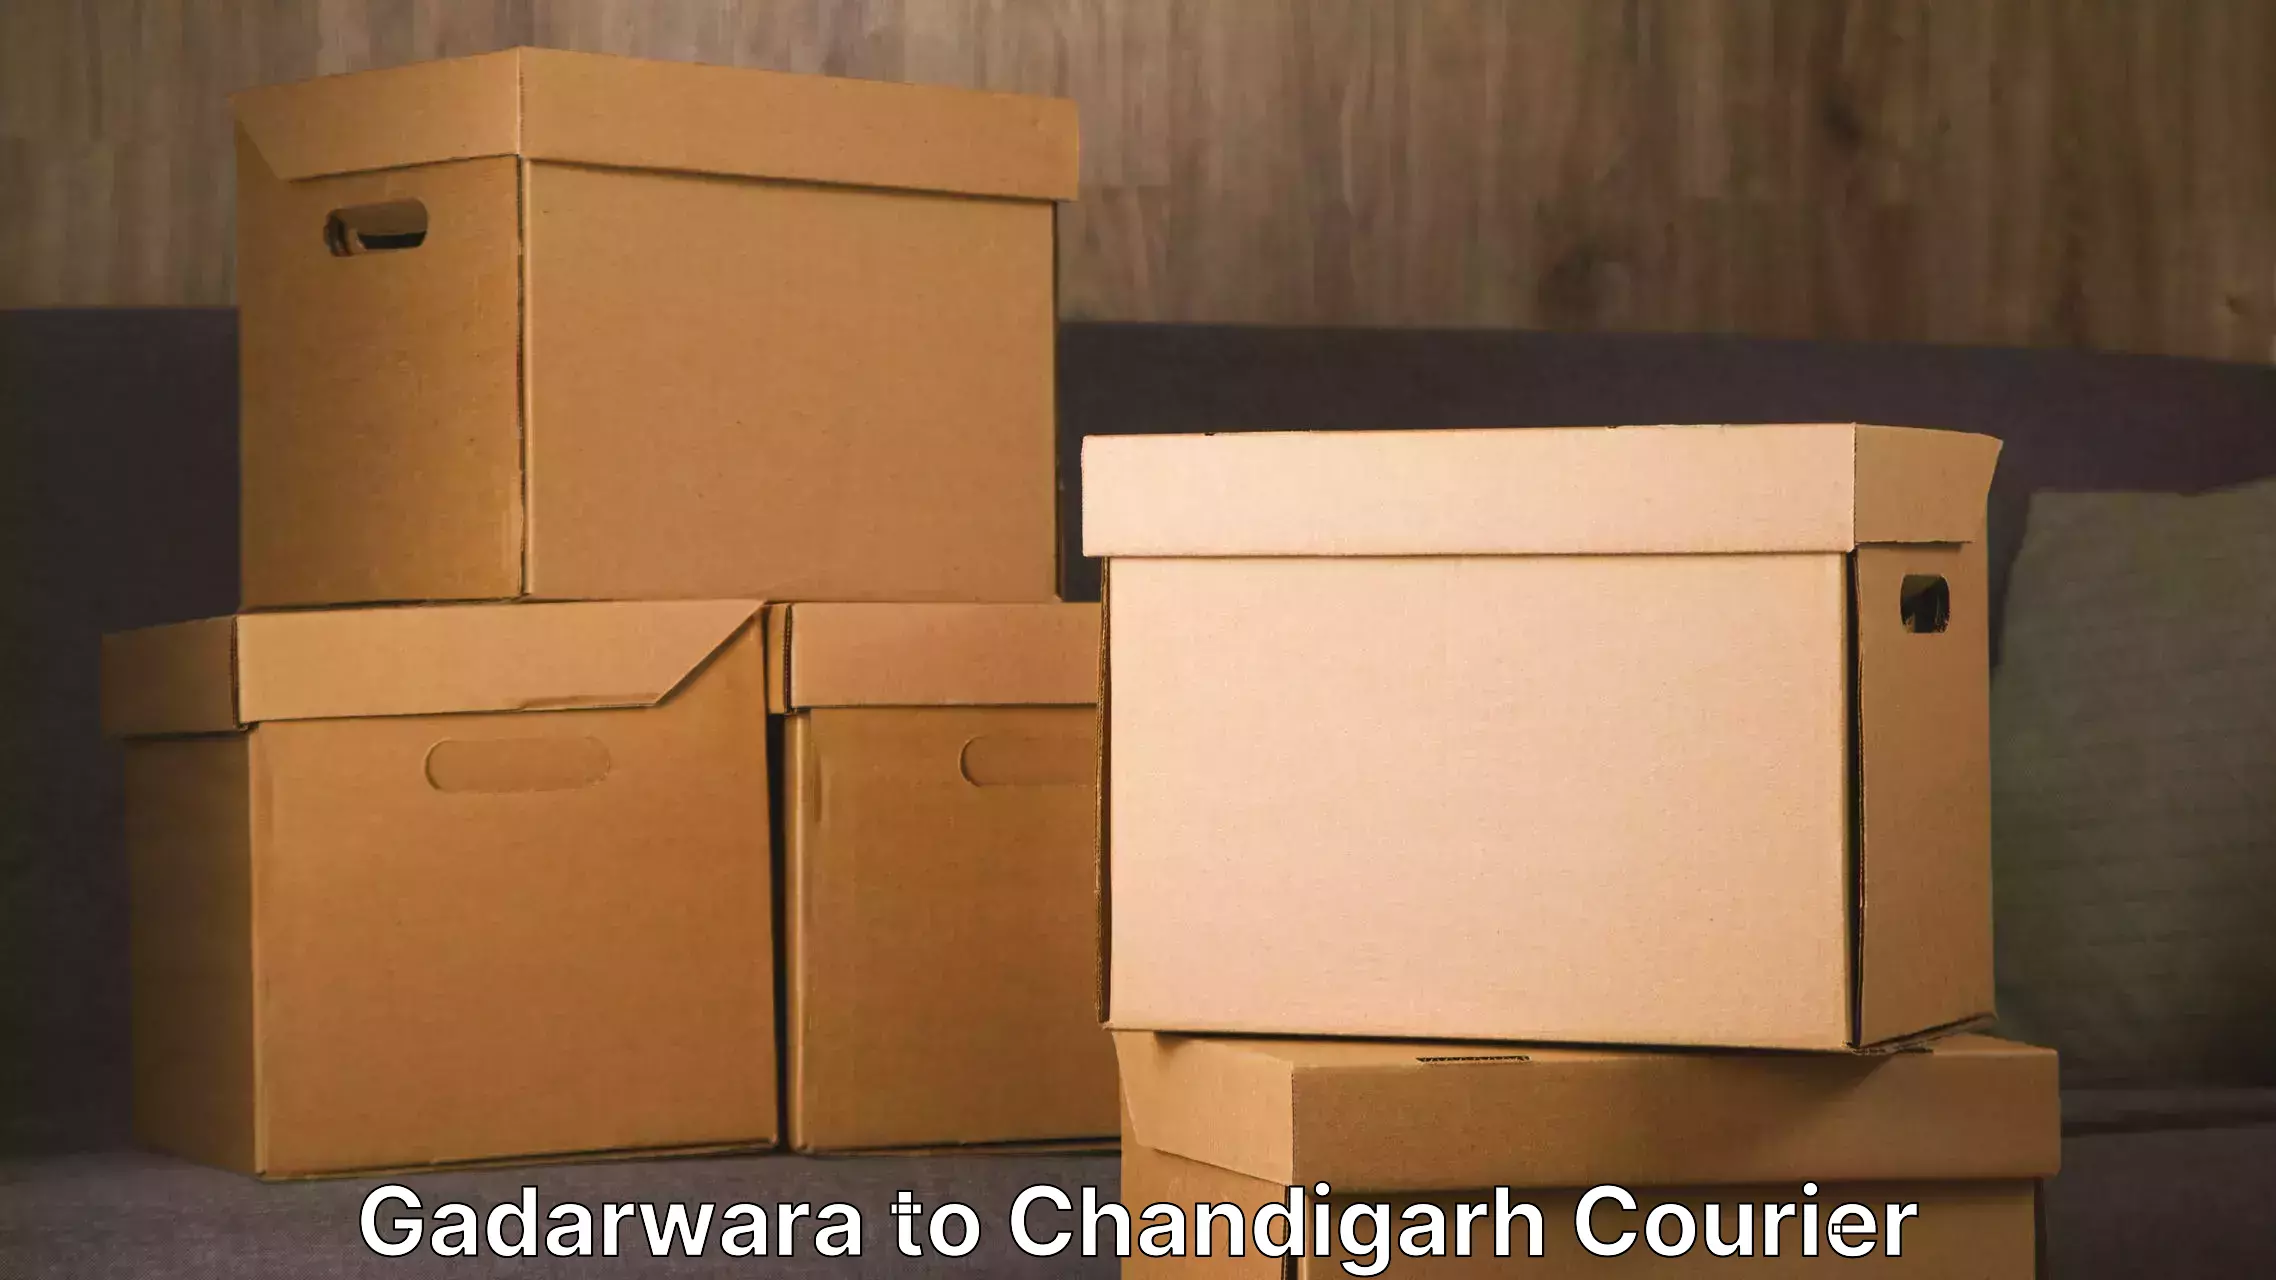 Furniture transport professionals Gadarwara to Chandigarh